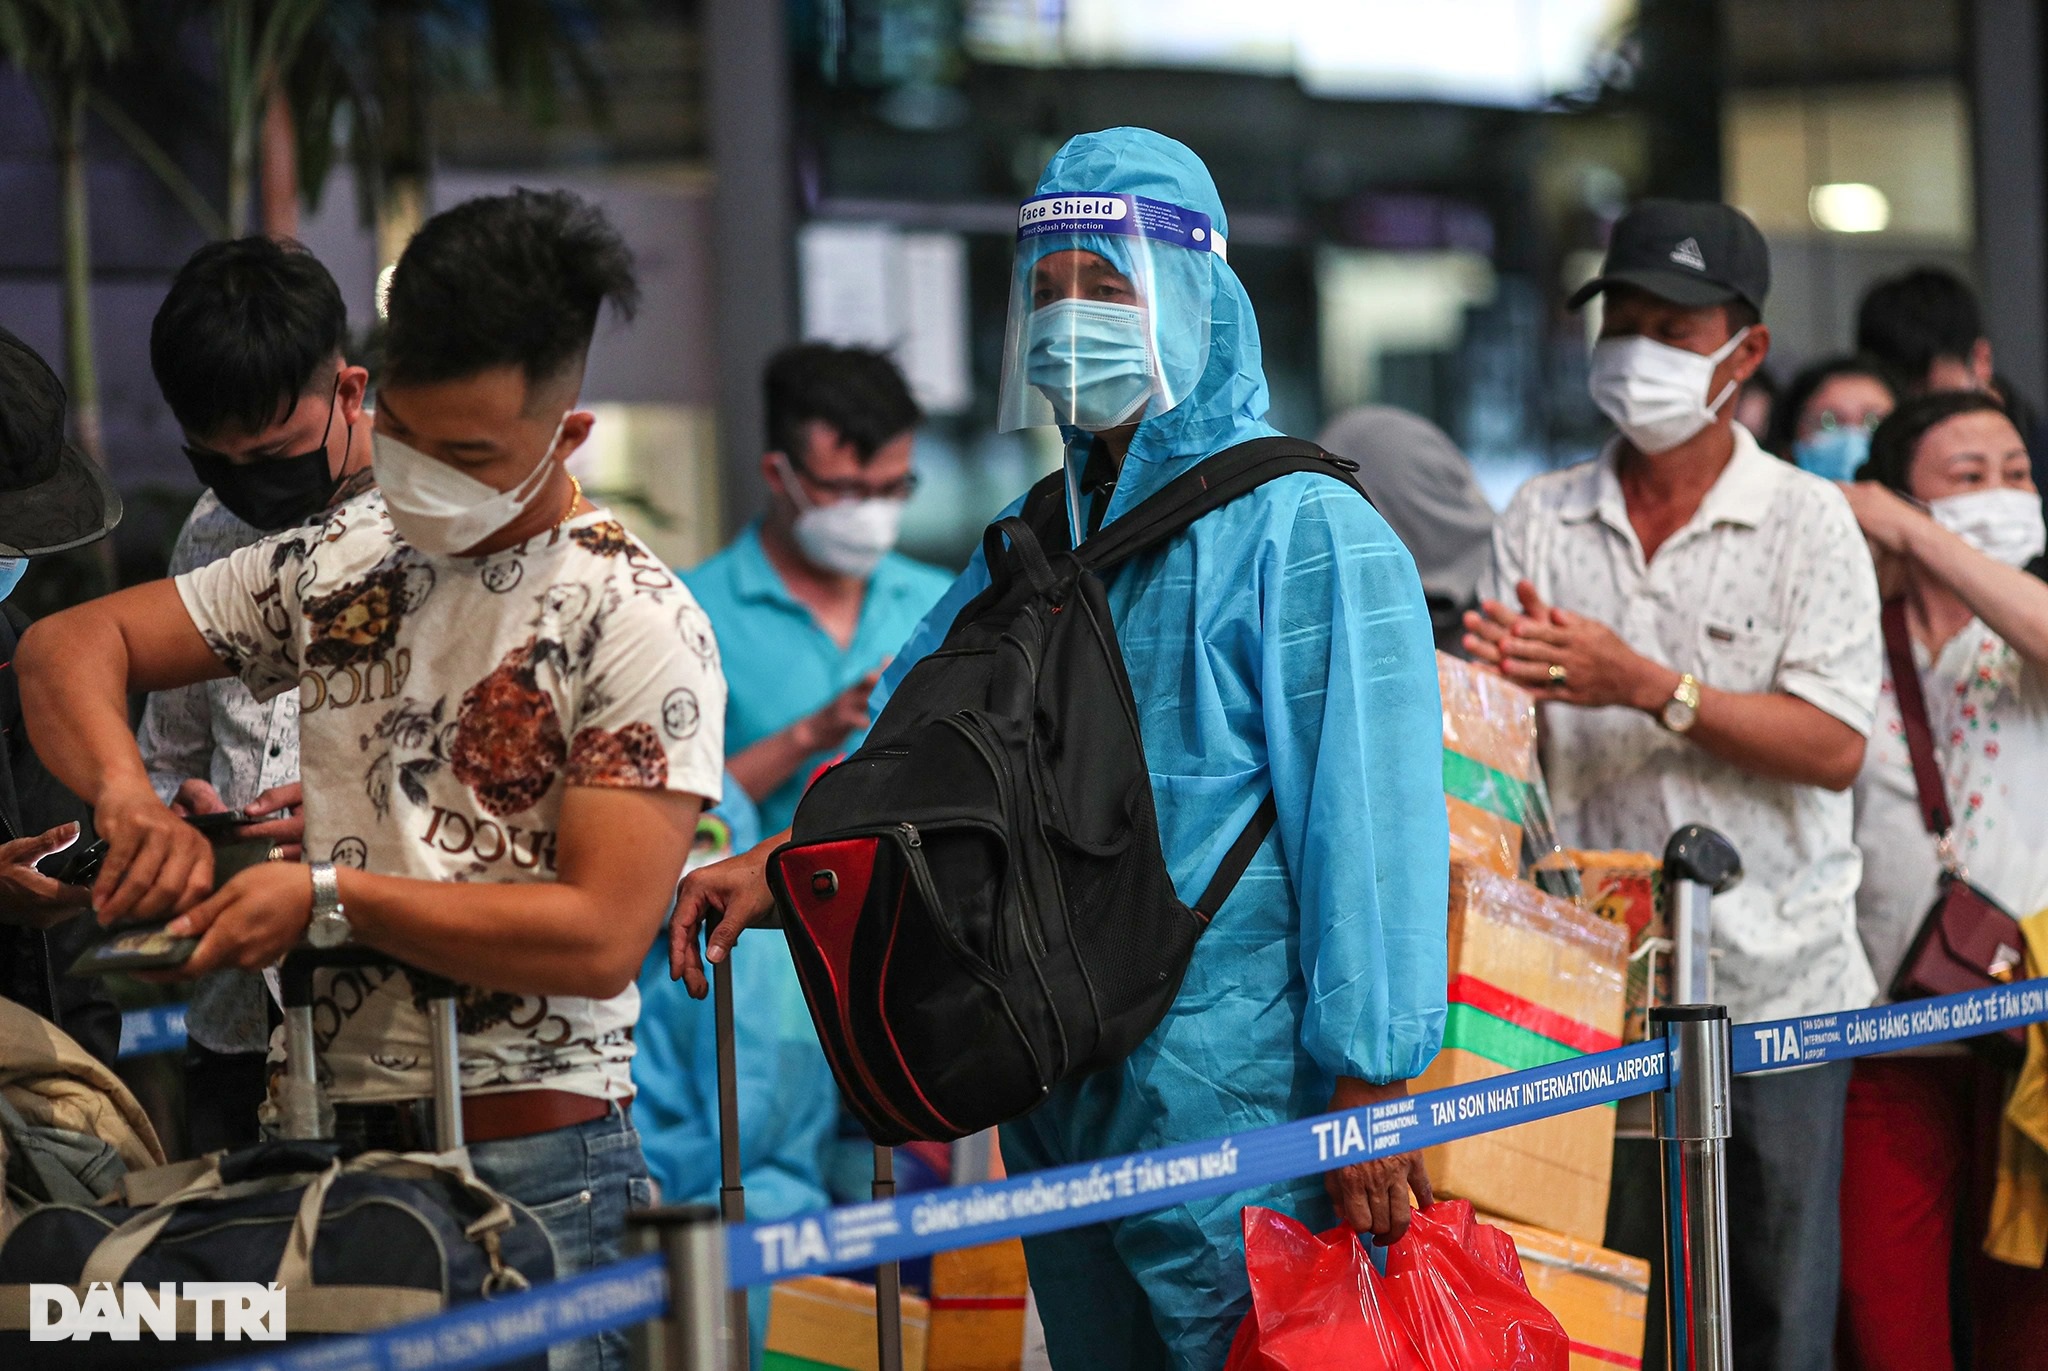 Sân bay Tân Sơn Nhất chật kín người, hành khách vật vờ chờ chuyến bay - 6